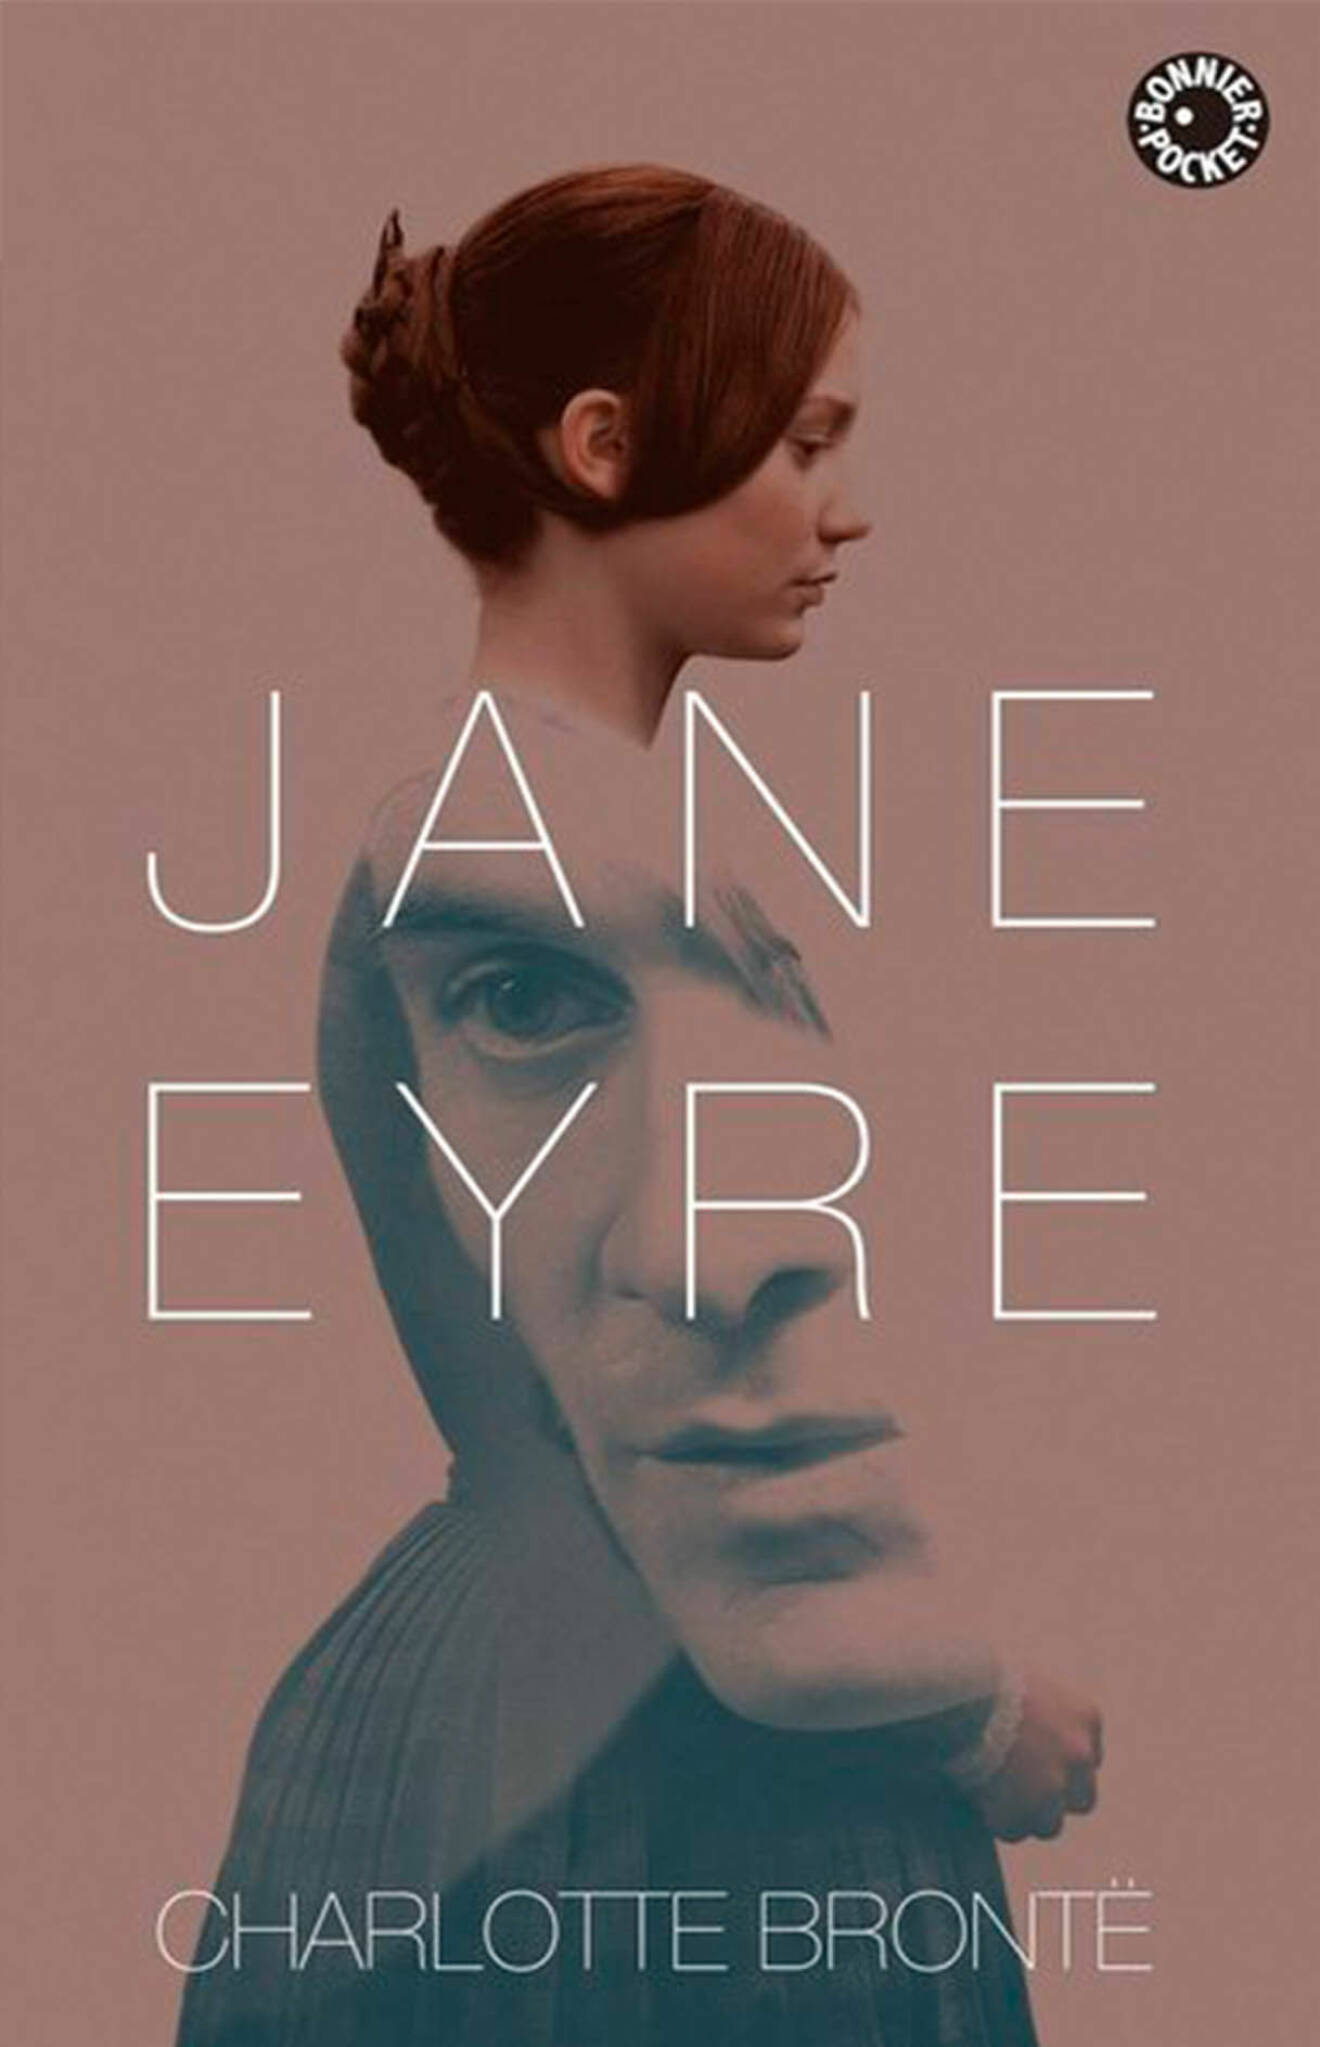 Bokomslag till Jane Eyre- Ung kvinna.